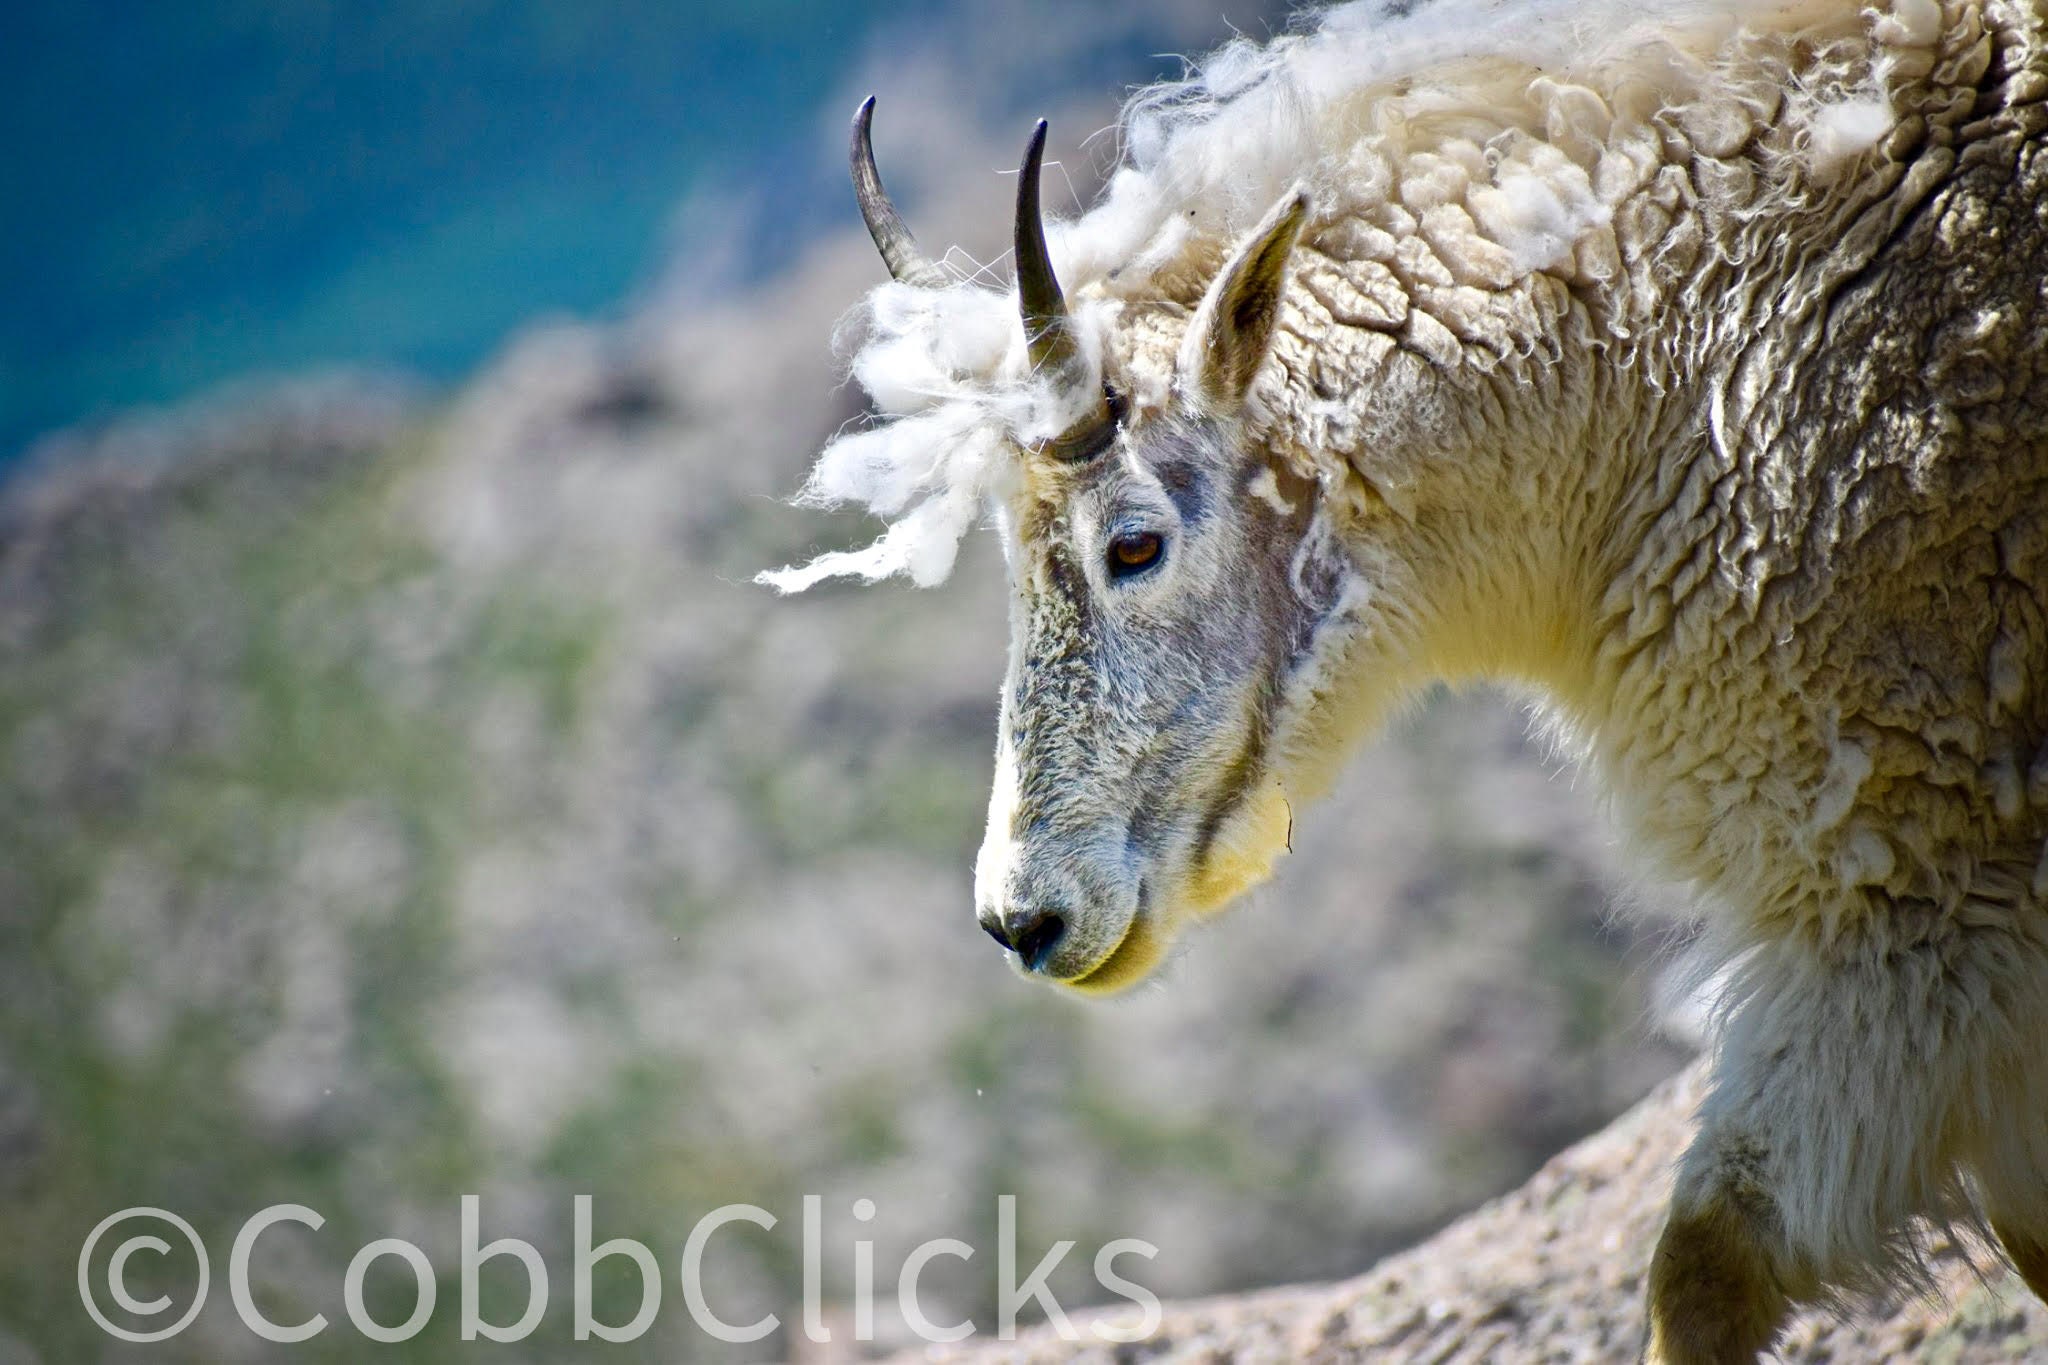 Dozen Mountain Goats at Mt Evans - Pencarian Lemon8